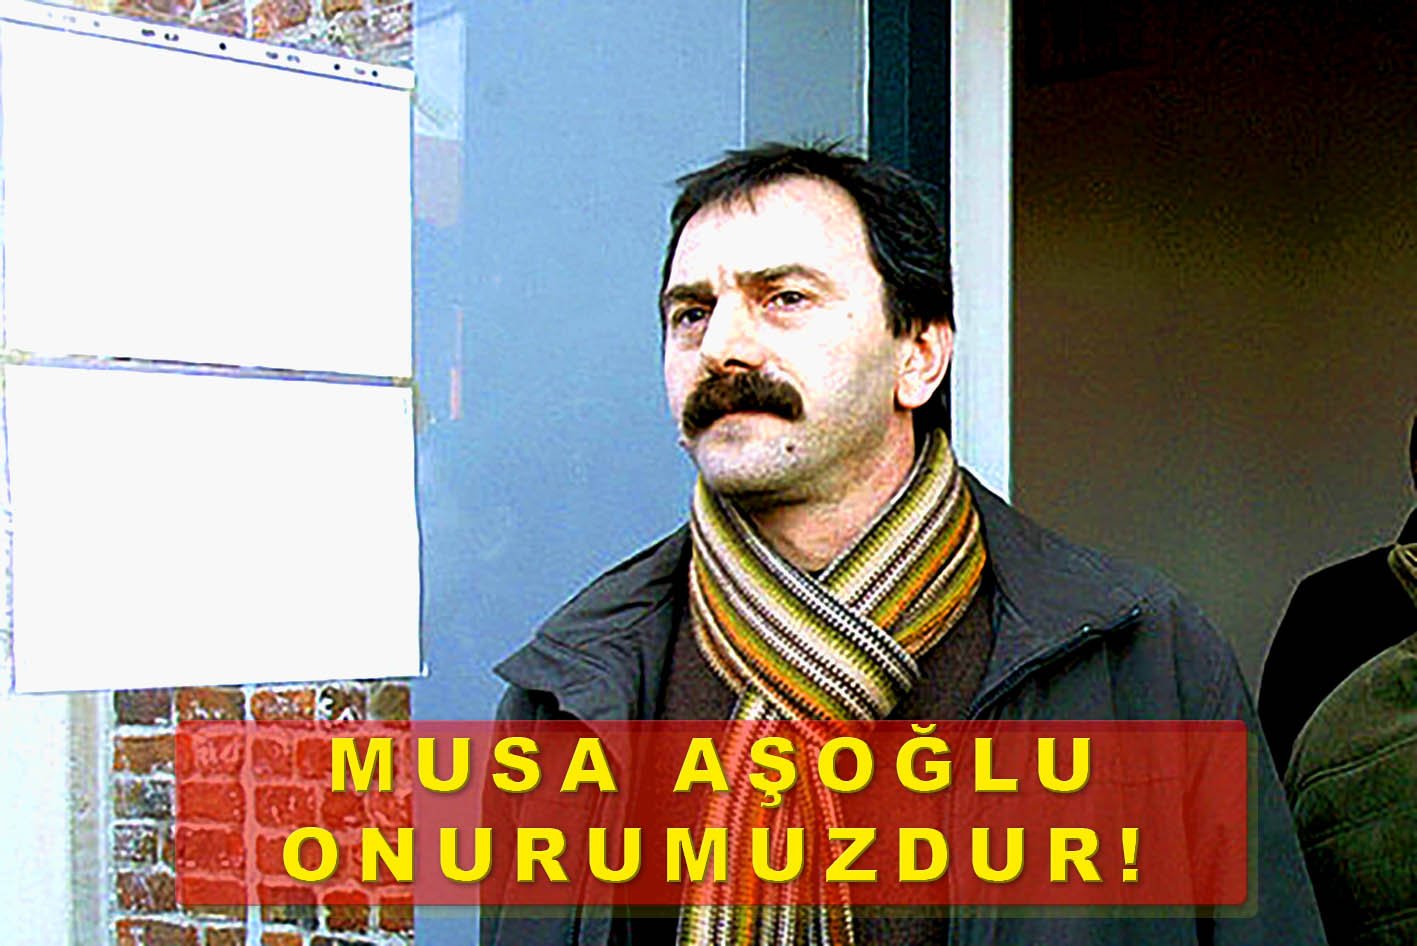 Freiheit für Musa Aşoğlu!